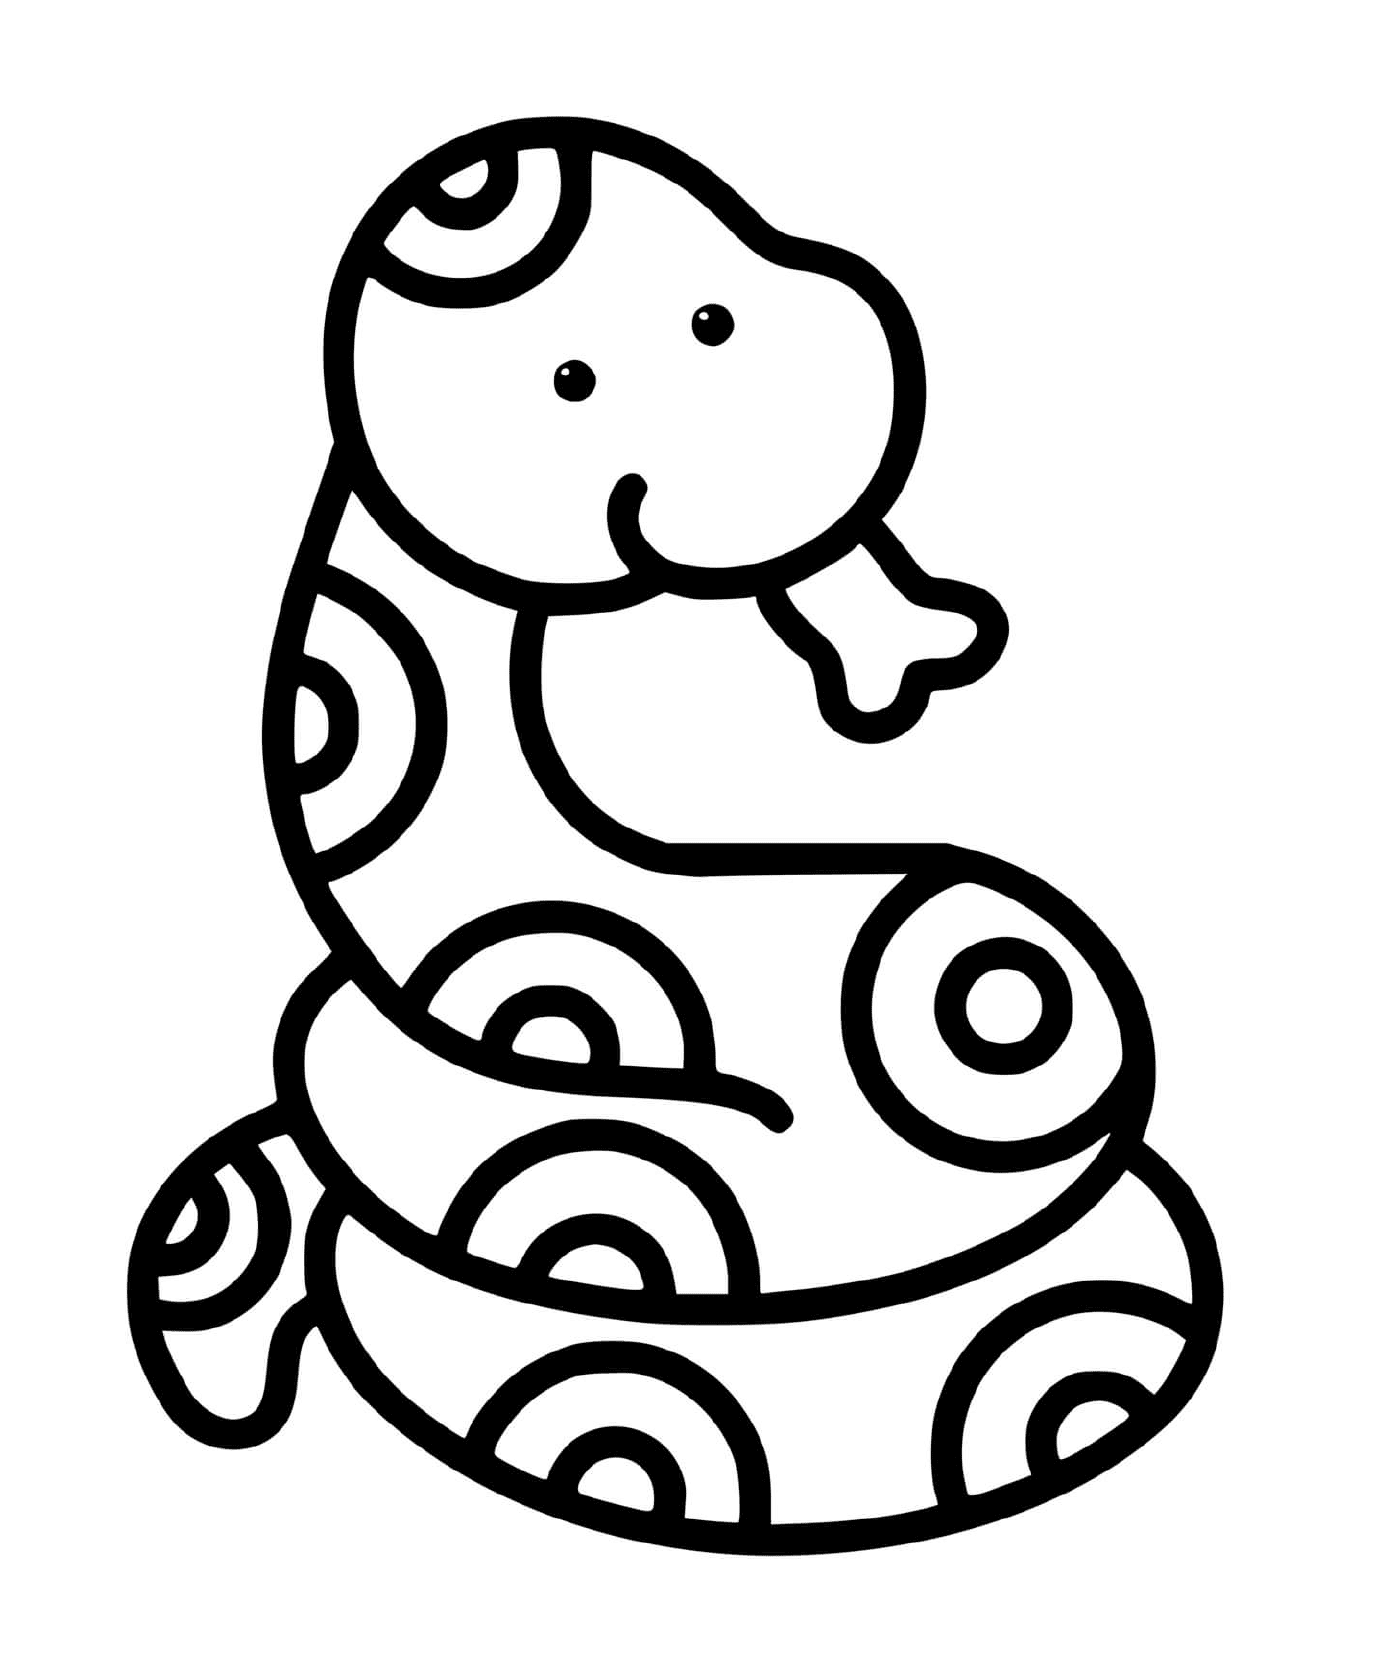  Una serpiente fácil de dibujar para niños de 2 años 